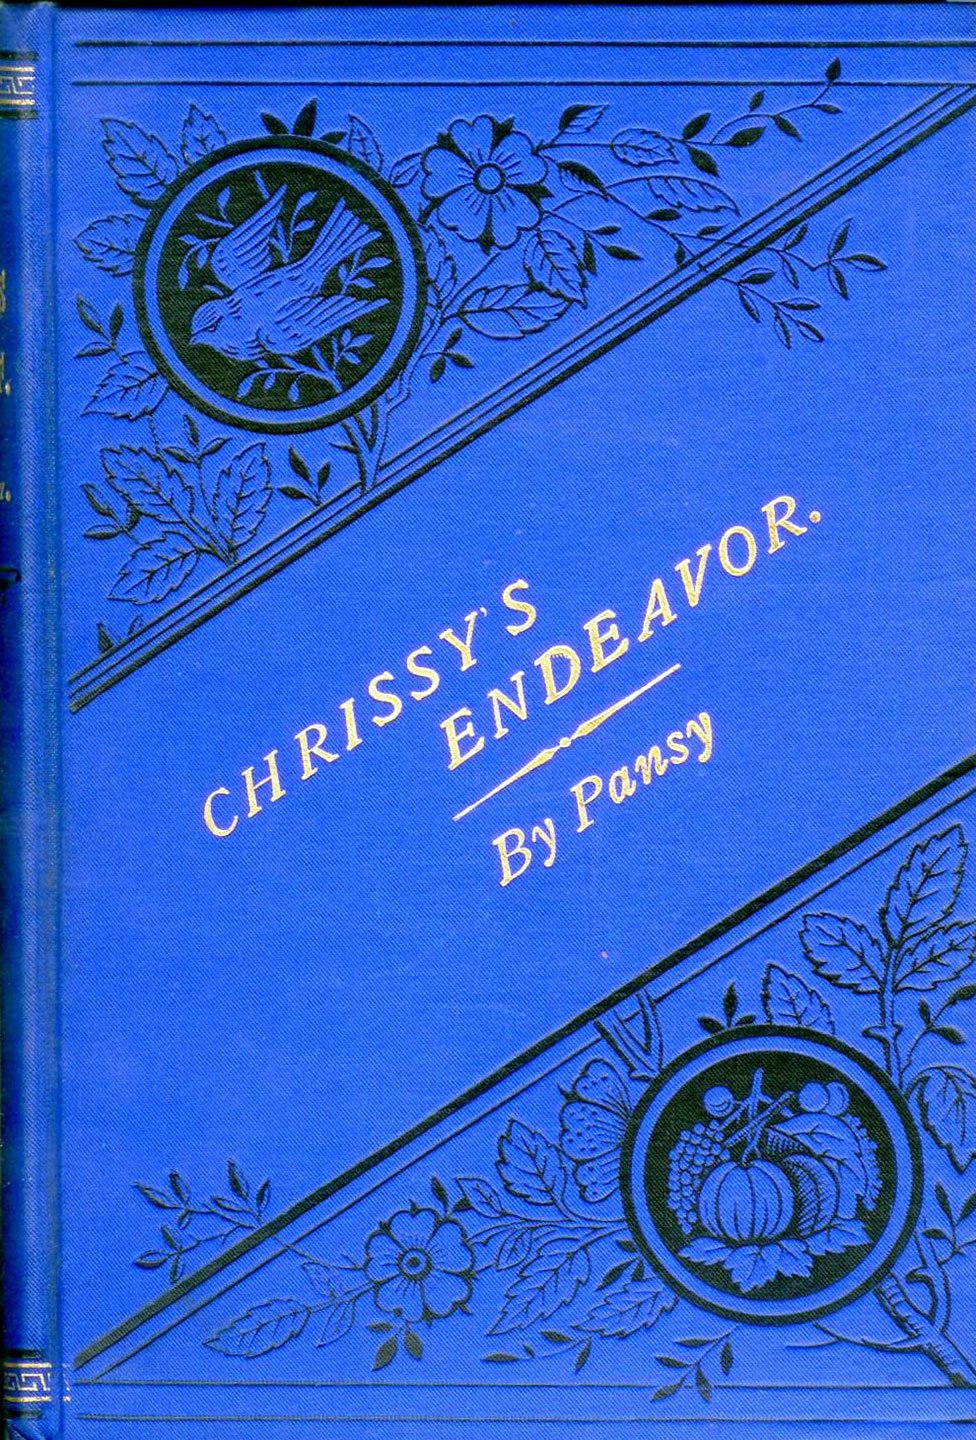 Chrissy's Endeavor